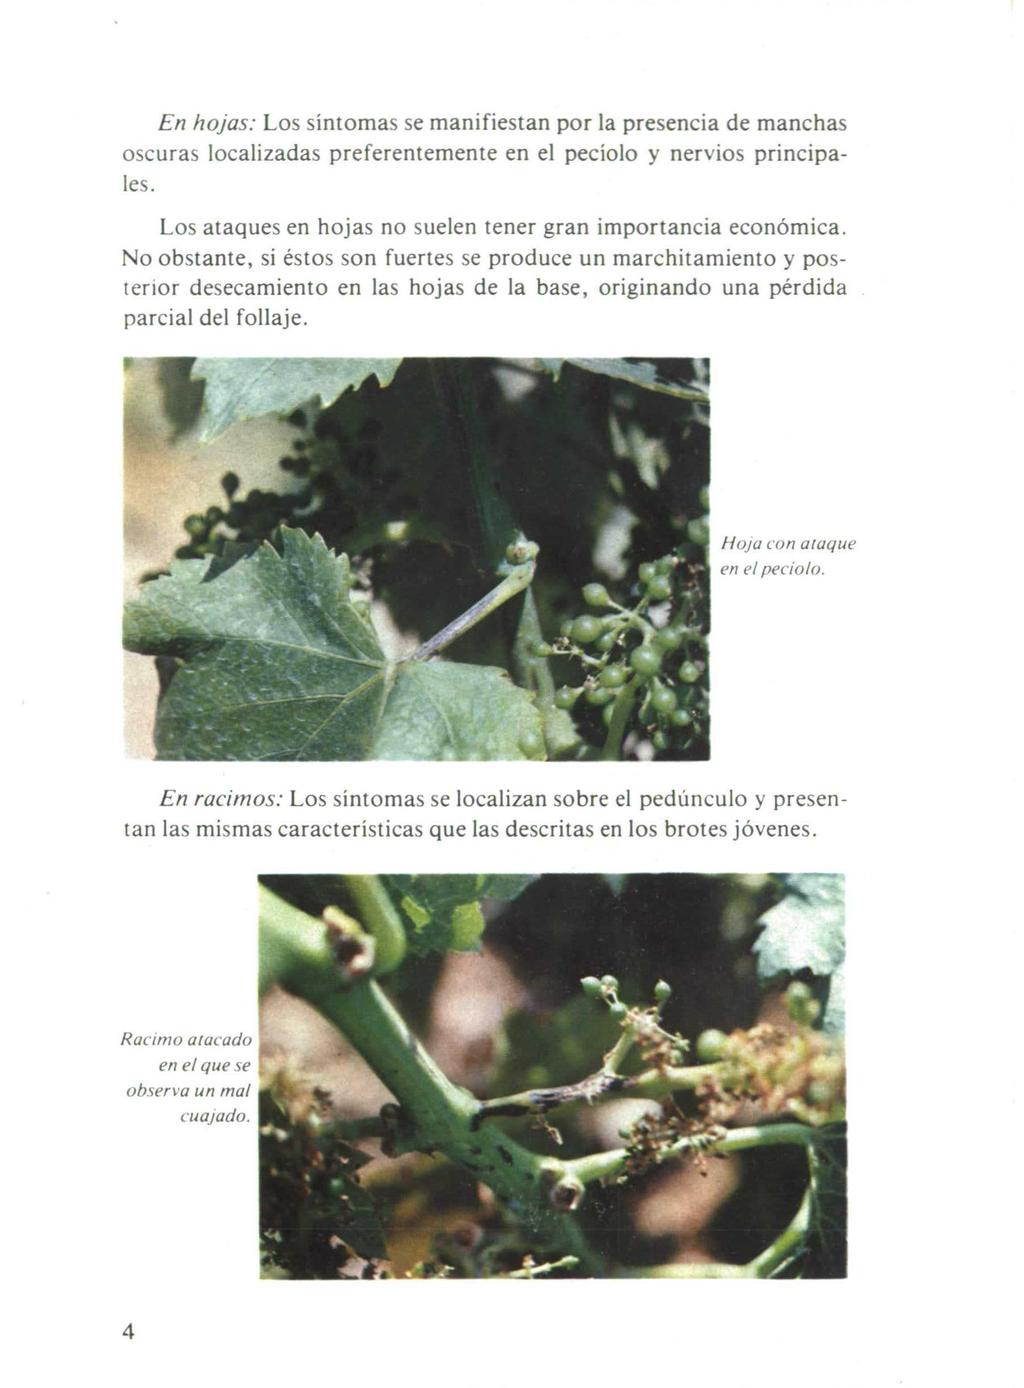 En hojas: Los síntomas se manifiestan por la presencia de manchas oscuras localizadas preferentemente en el pecíolo y nervios principales.